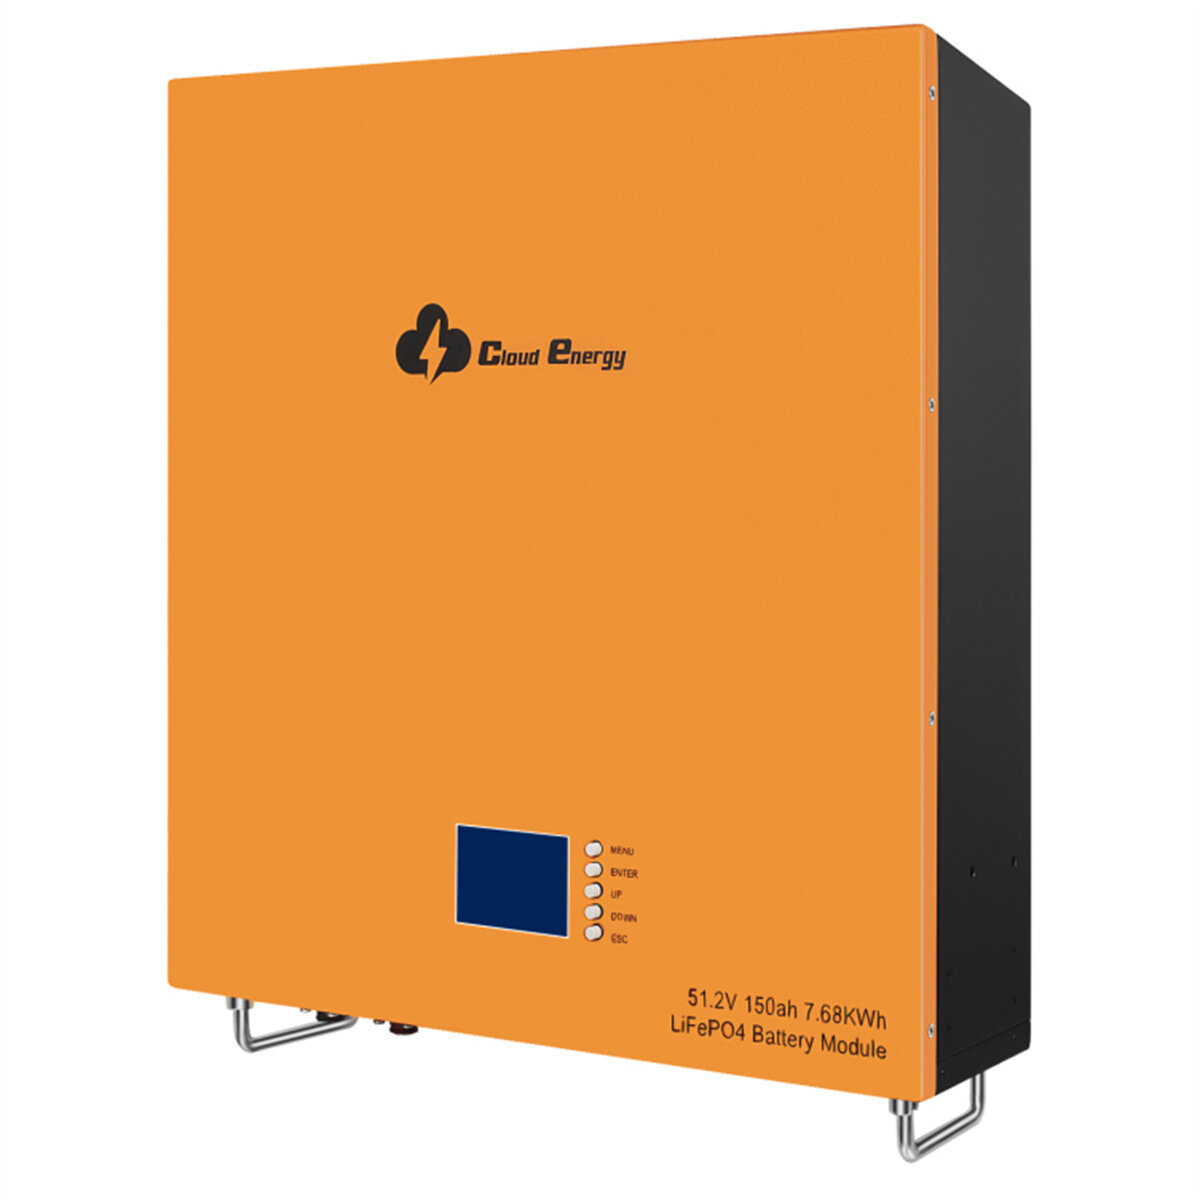 [EU Direct] Cloudenergy 48V 150Ah 7,68KWh Bateria de lítio LiFePO4 montada na parede, mais de 6000 ciclos de vida, BMS integrado e monitor LED, RV, power bank para armazenamento de energia doméstica